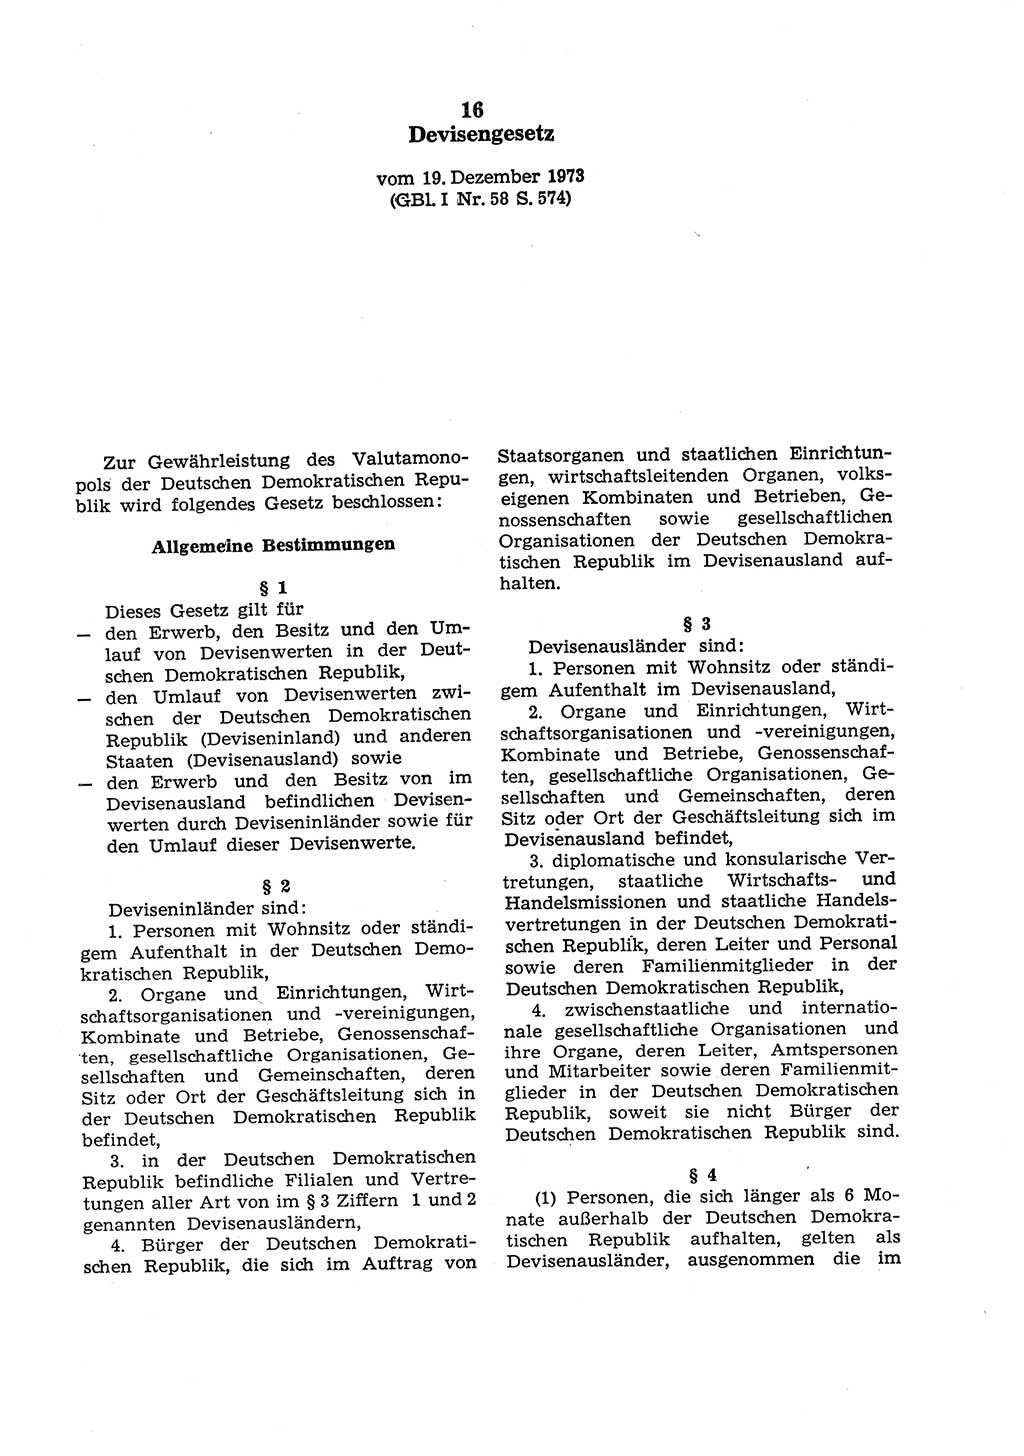 Strafgesetzbuch (StGB) der Deutschen Demokratischen Republik (DDR) und angrenzende Gesetze und Bestimmungen 1975, Seite 239 (StGB DDR Ges. Best. 1975, S. 239)